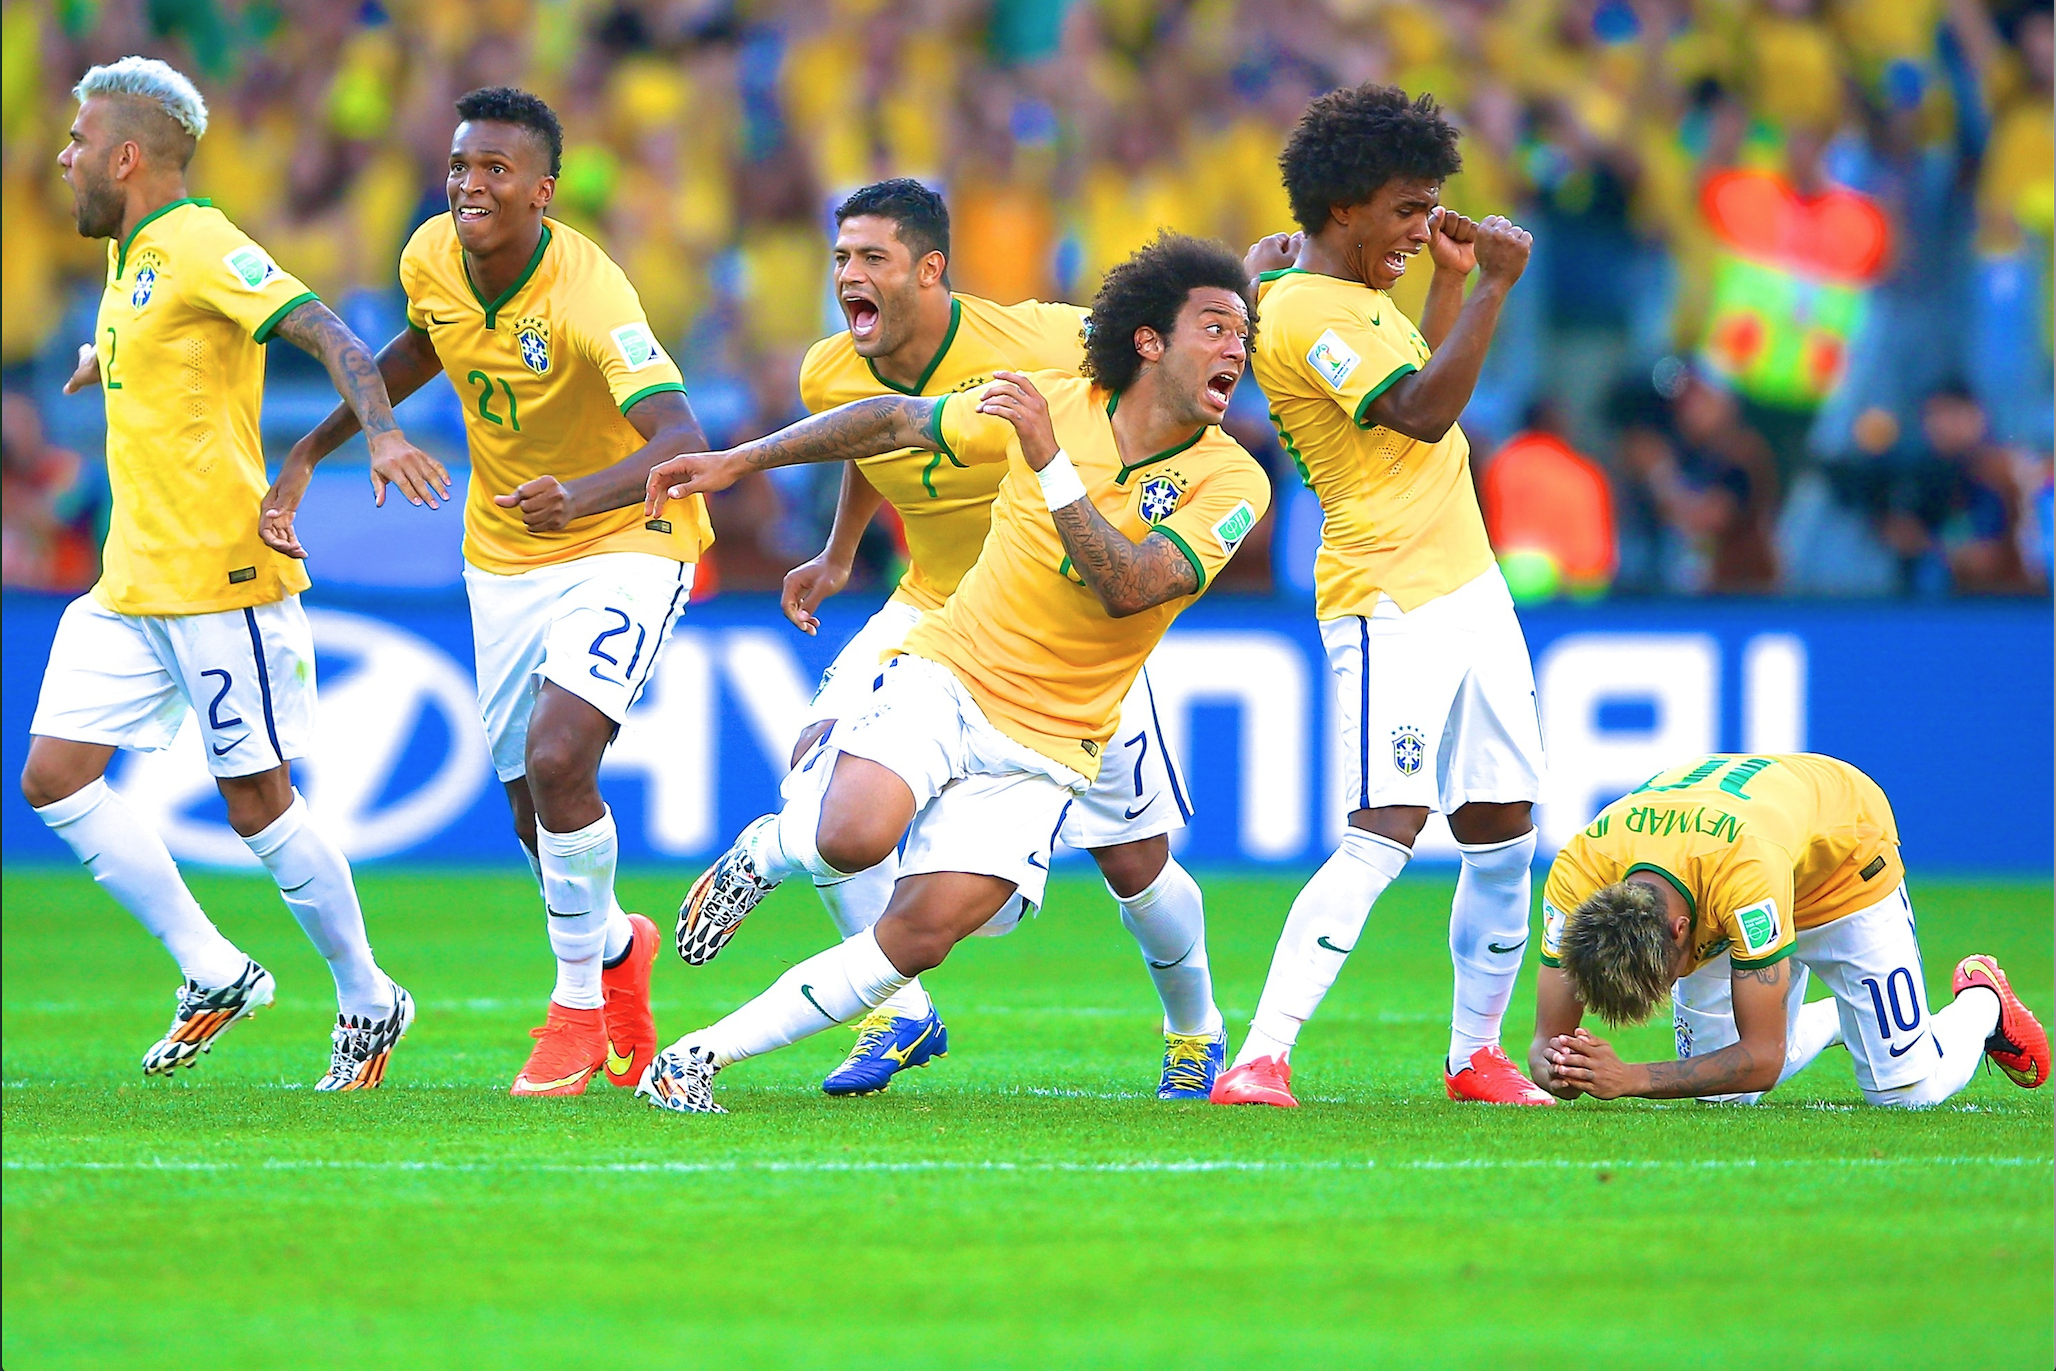 File:Brazil vs Chile (16401226664).jpg - Wikipedia